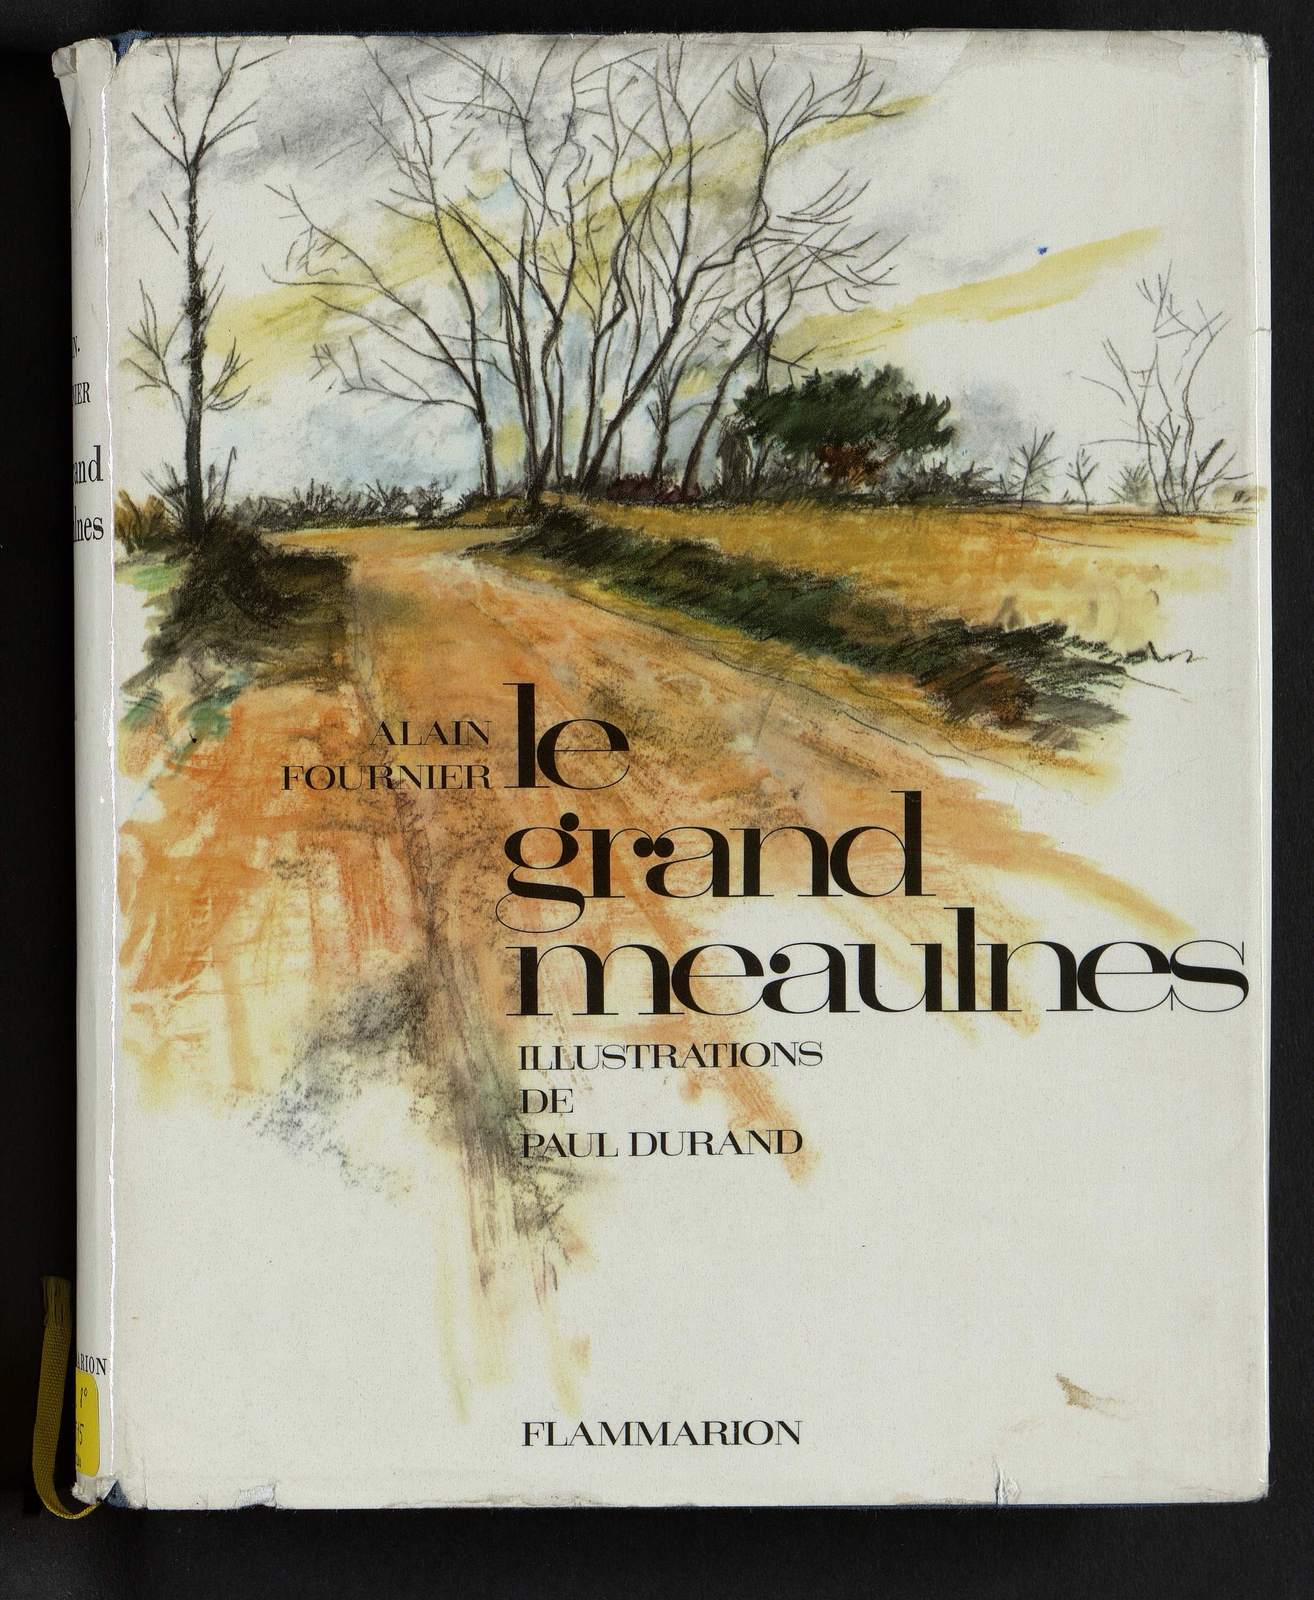 Le Grand Meaulnes, Conversation sous la pluie, illustré par Paul Durand, Flammarion, 1962